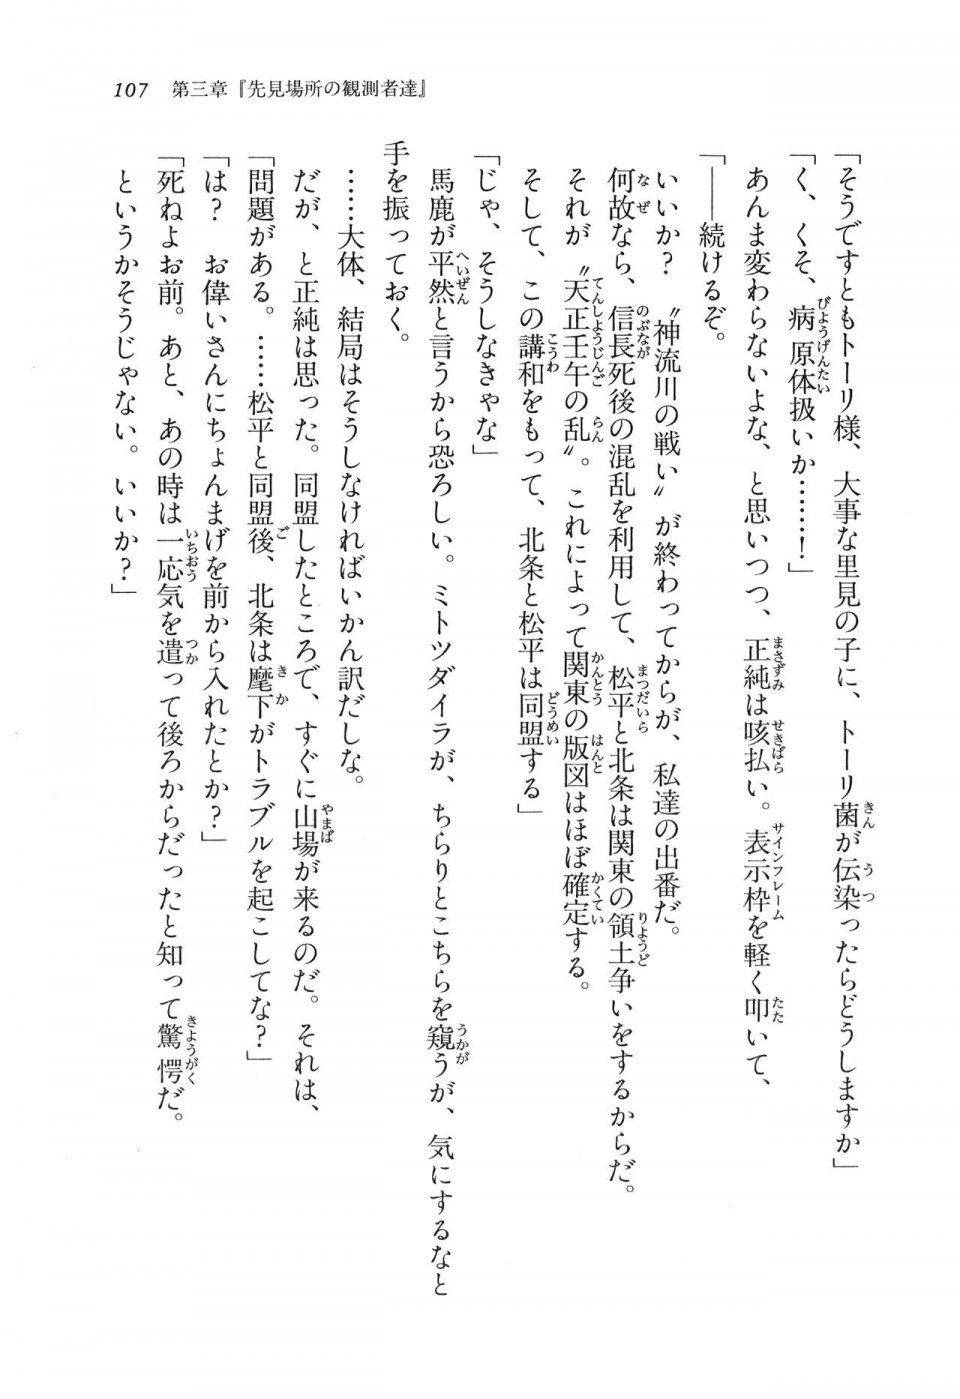 Kyoukai Senjou no Horizon LN Vol 11(5A) - Photo #107